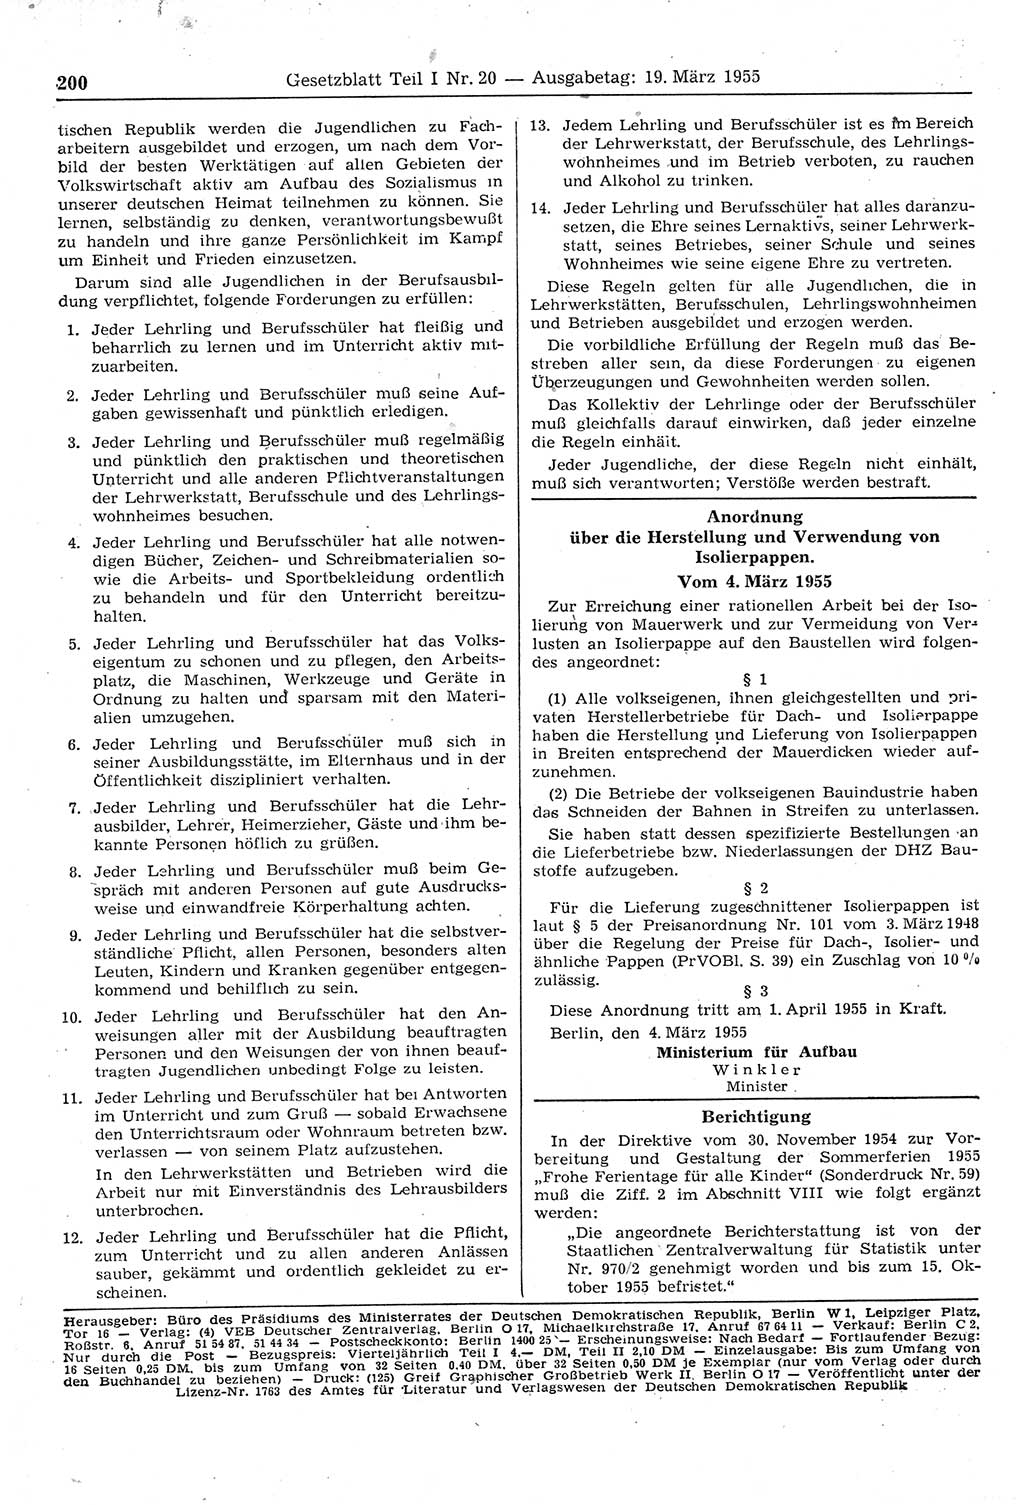 Gesetzblatt (GBl.) der Deutschen Demokratischen Republik (DDR) Teil Ⅰ 1955, Seite 200 (GBl. DDR Ⅰ 1955, S. 200)